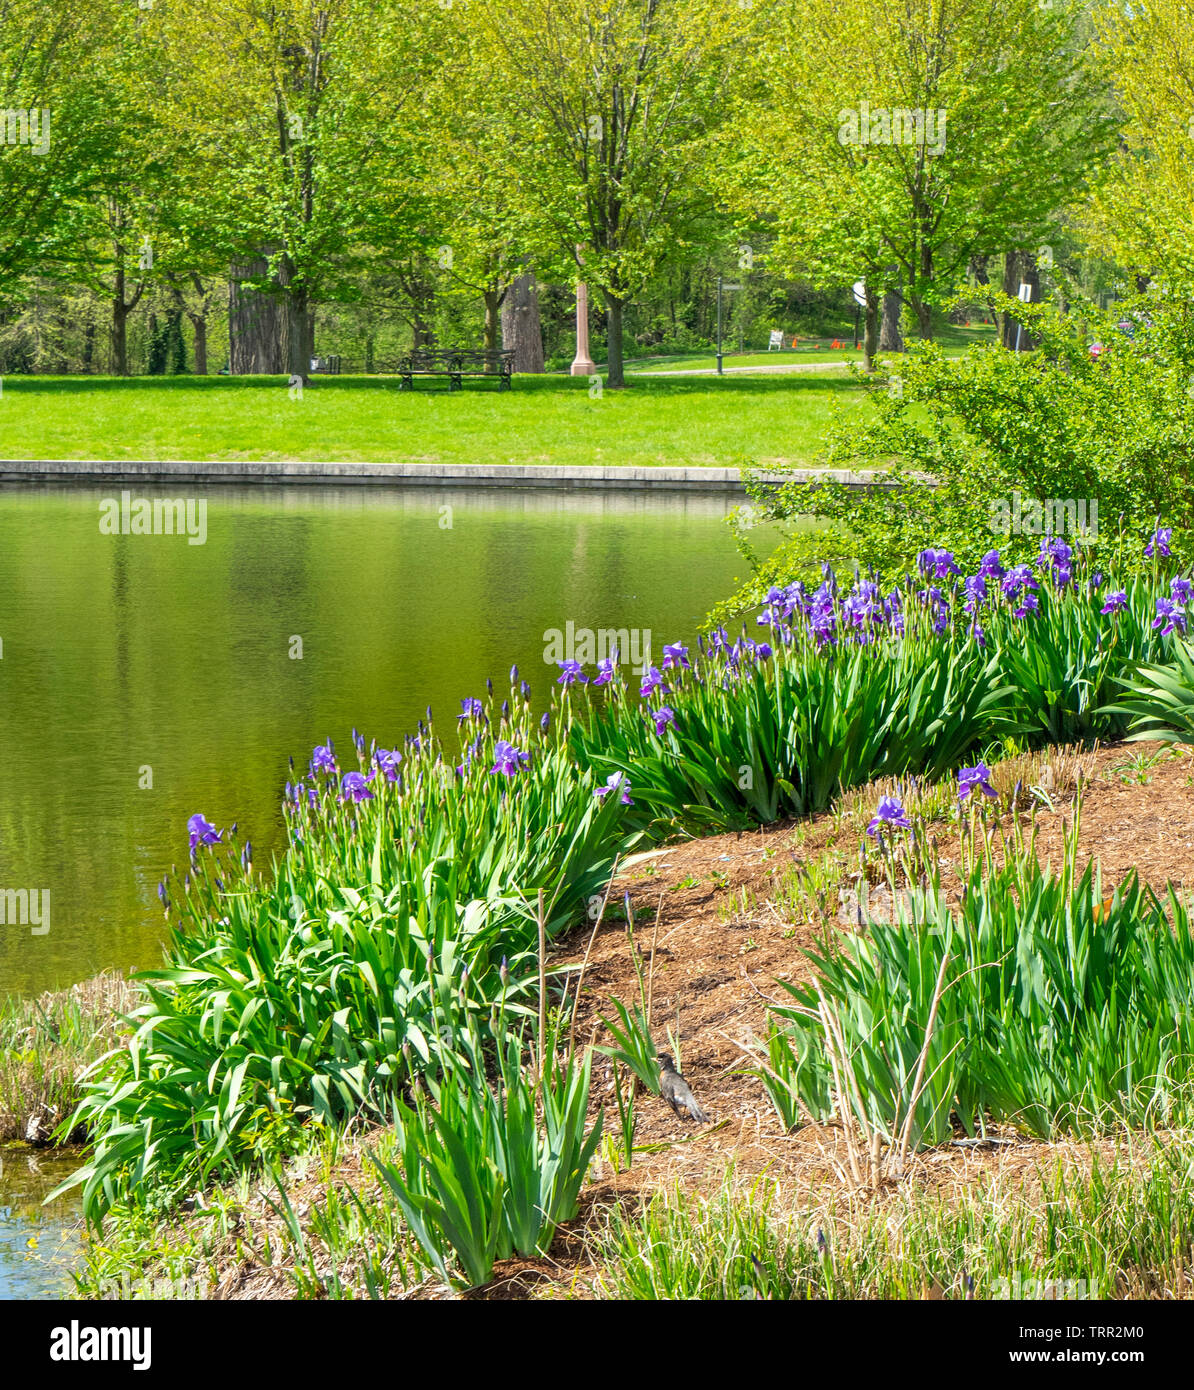 Violett Iris wachsenden am Rande eines Sees in Forest Park St Louis Missouri USA. Stockfoto